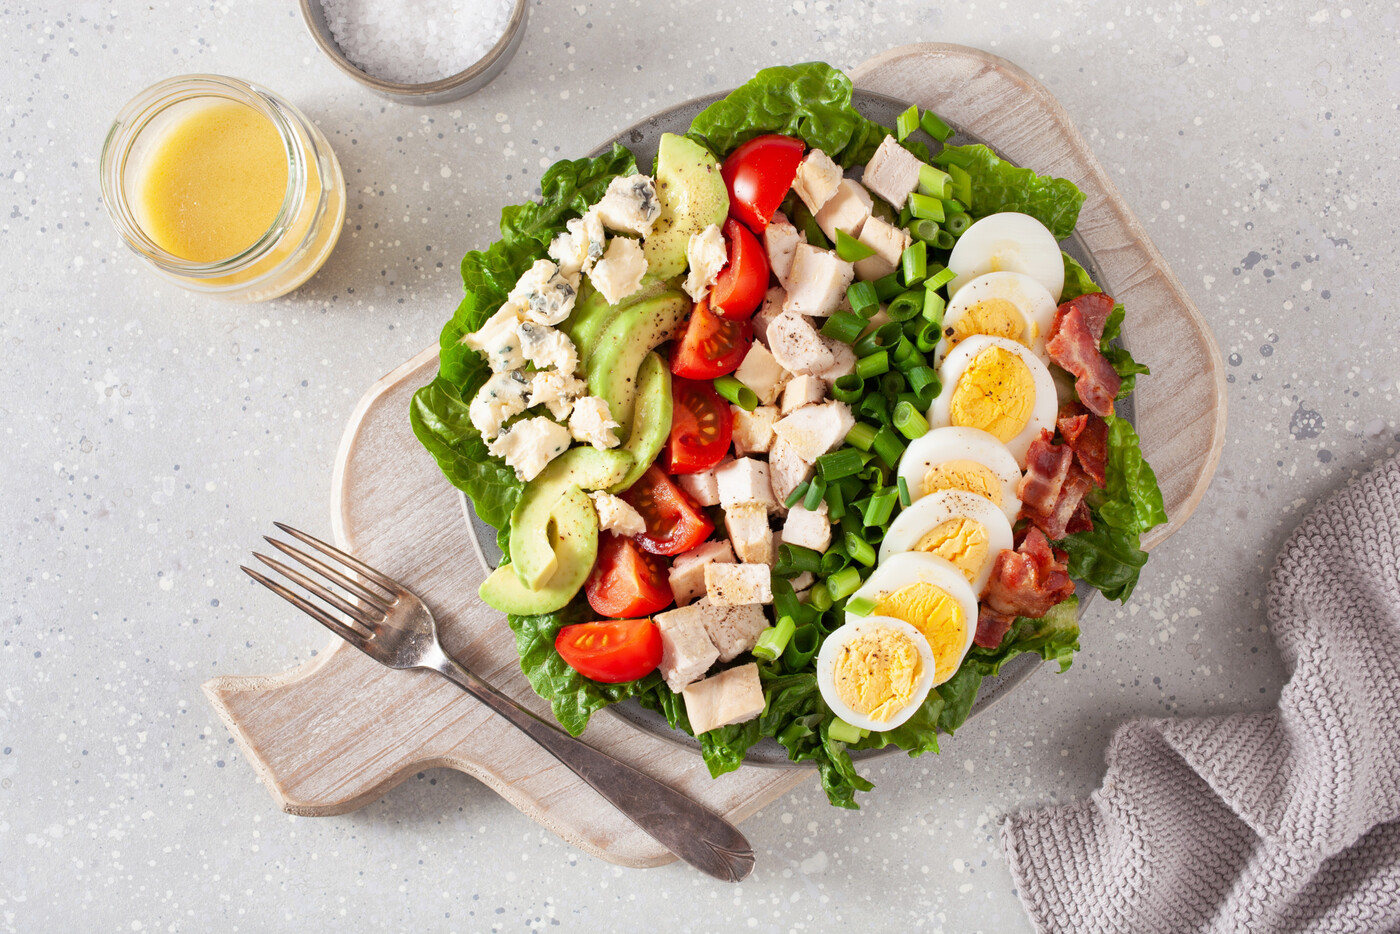 Gesunde Variante: Auf dem Salat sind gekochte Eier eine gute Kombination.